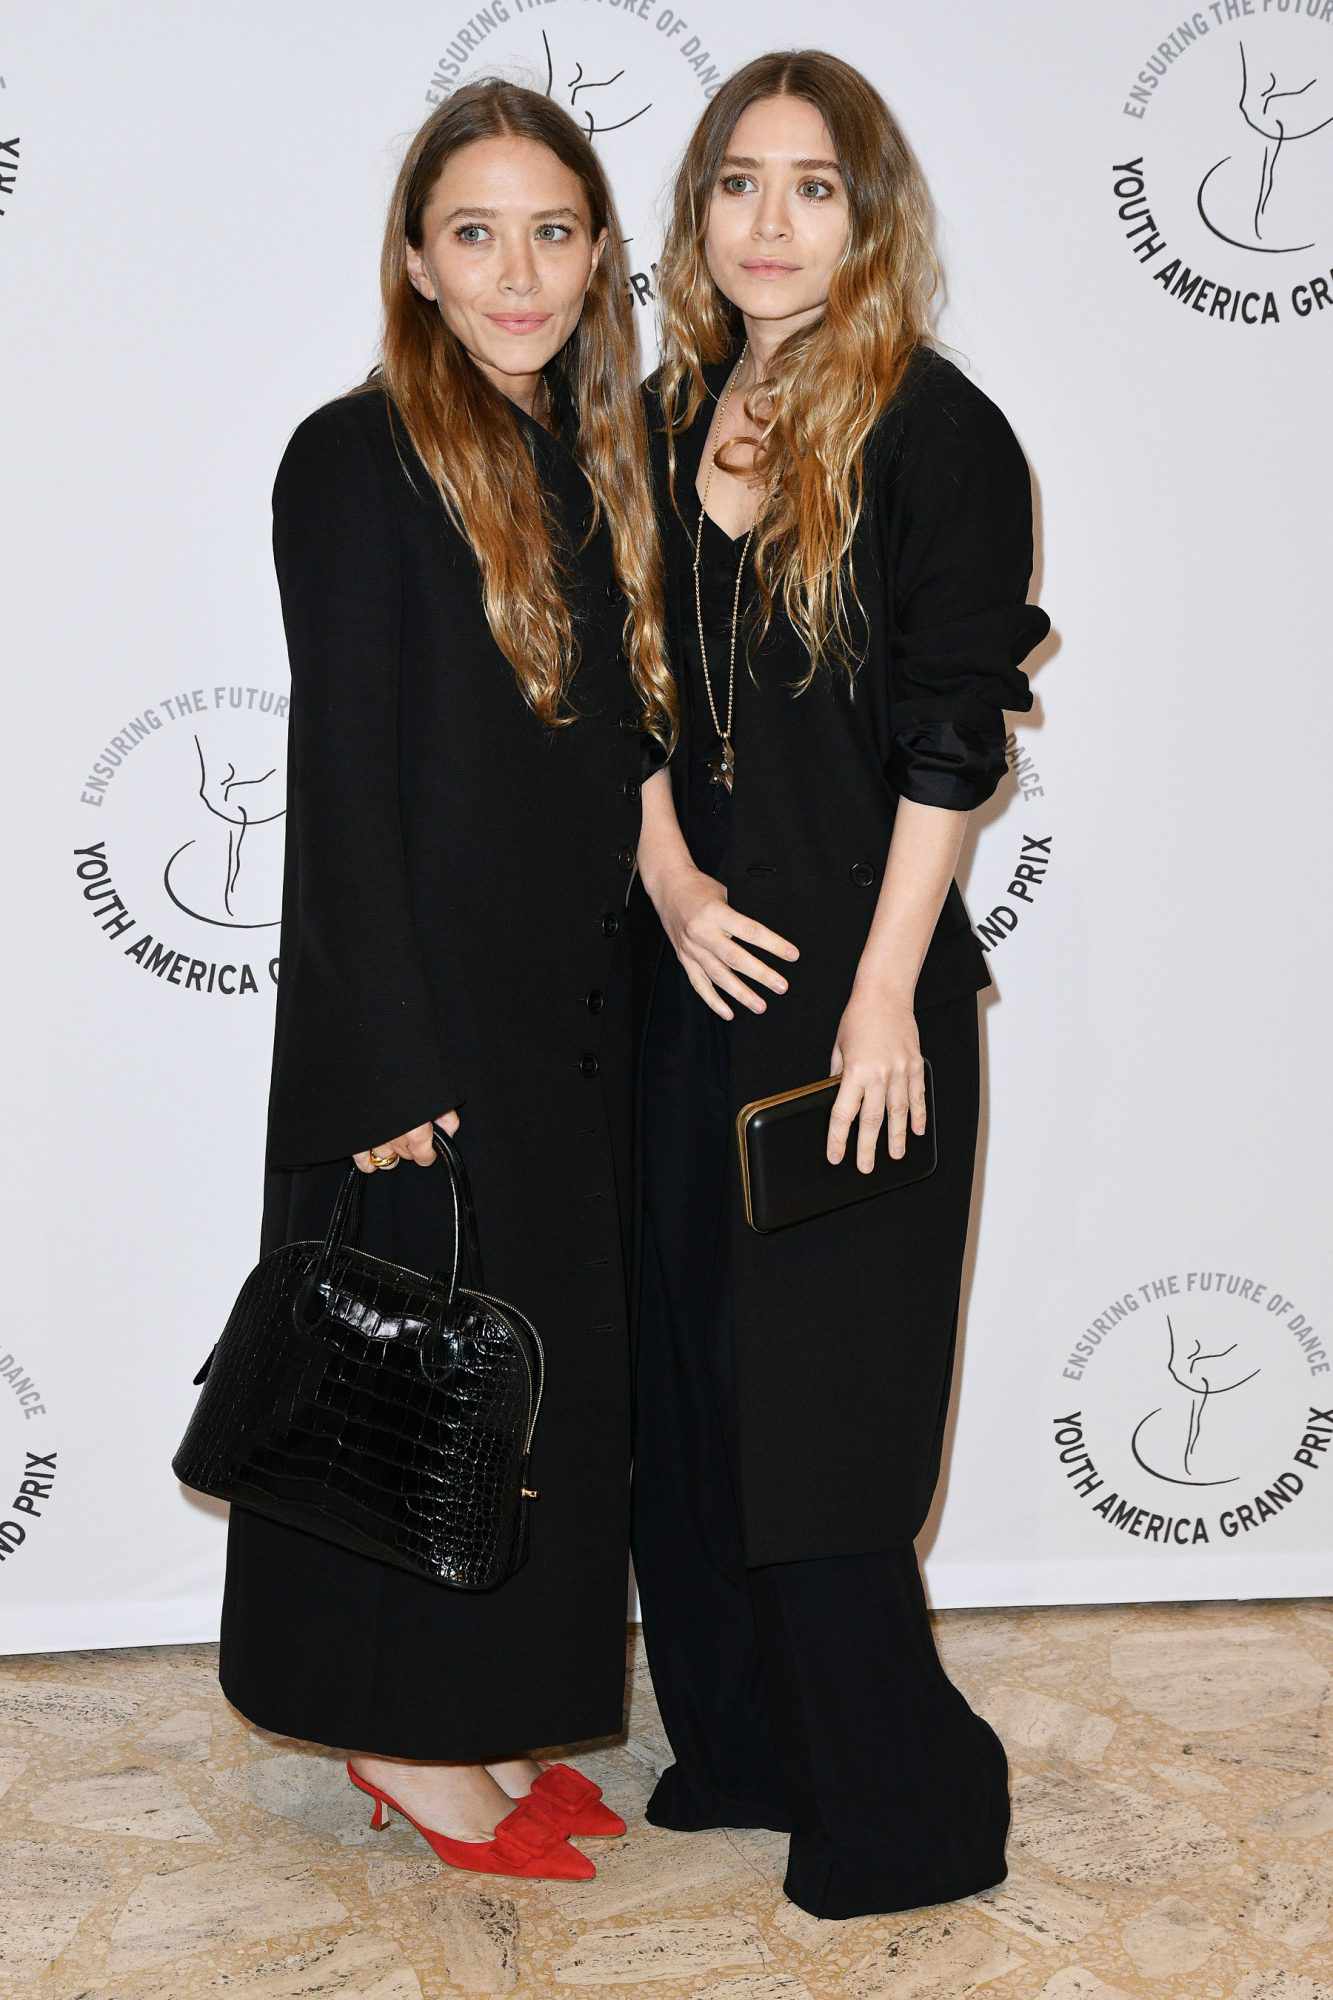 Mary Kate Olsen and Ashley Olsen